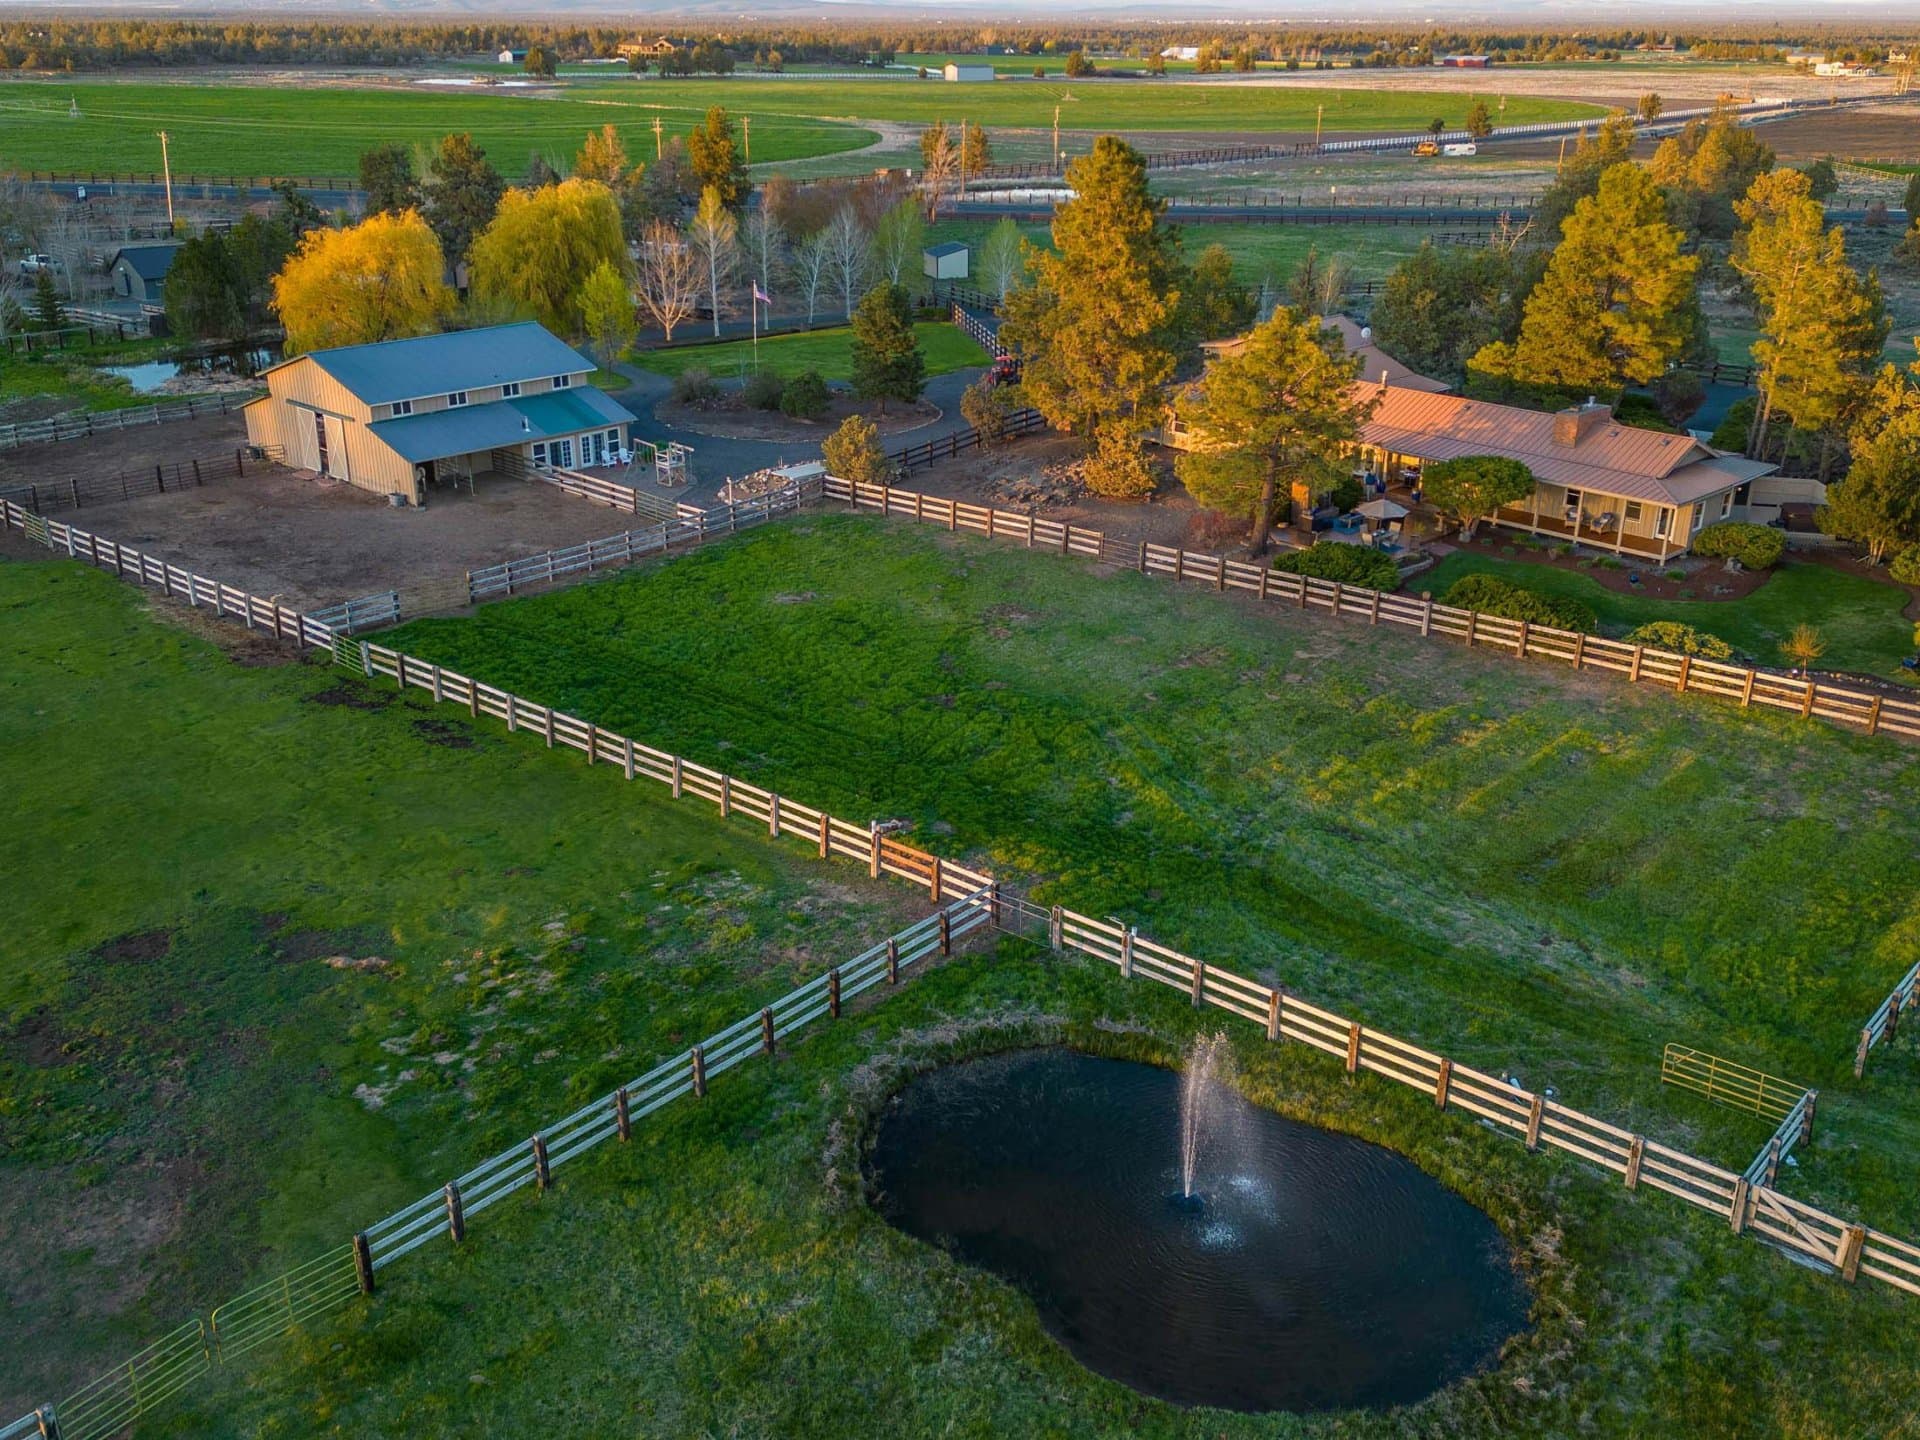 Pond House Barn oregon redhawk ranch